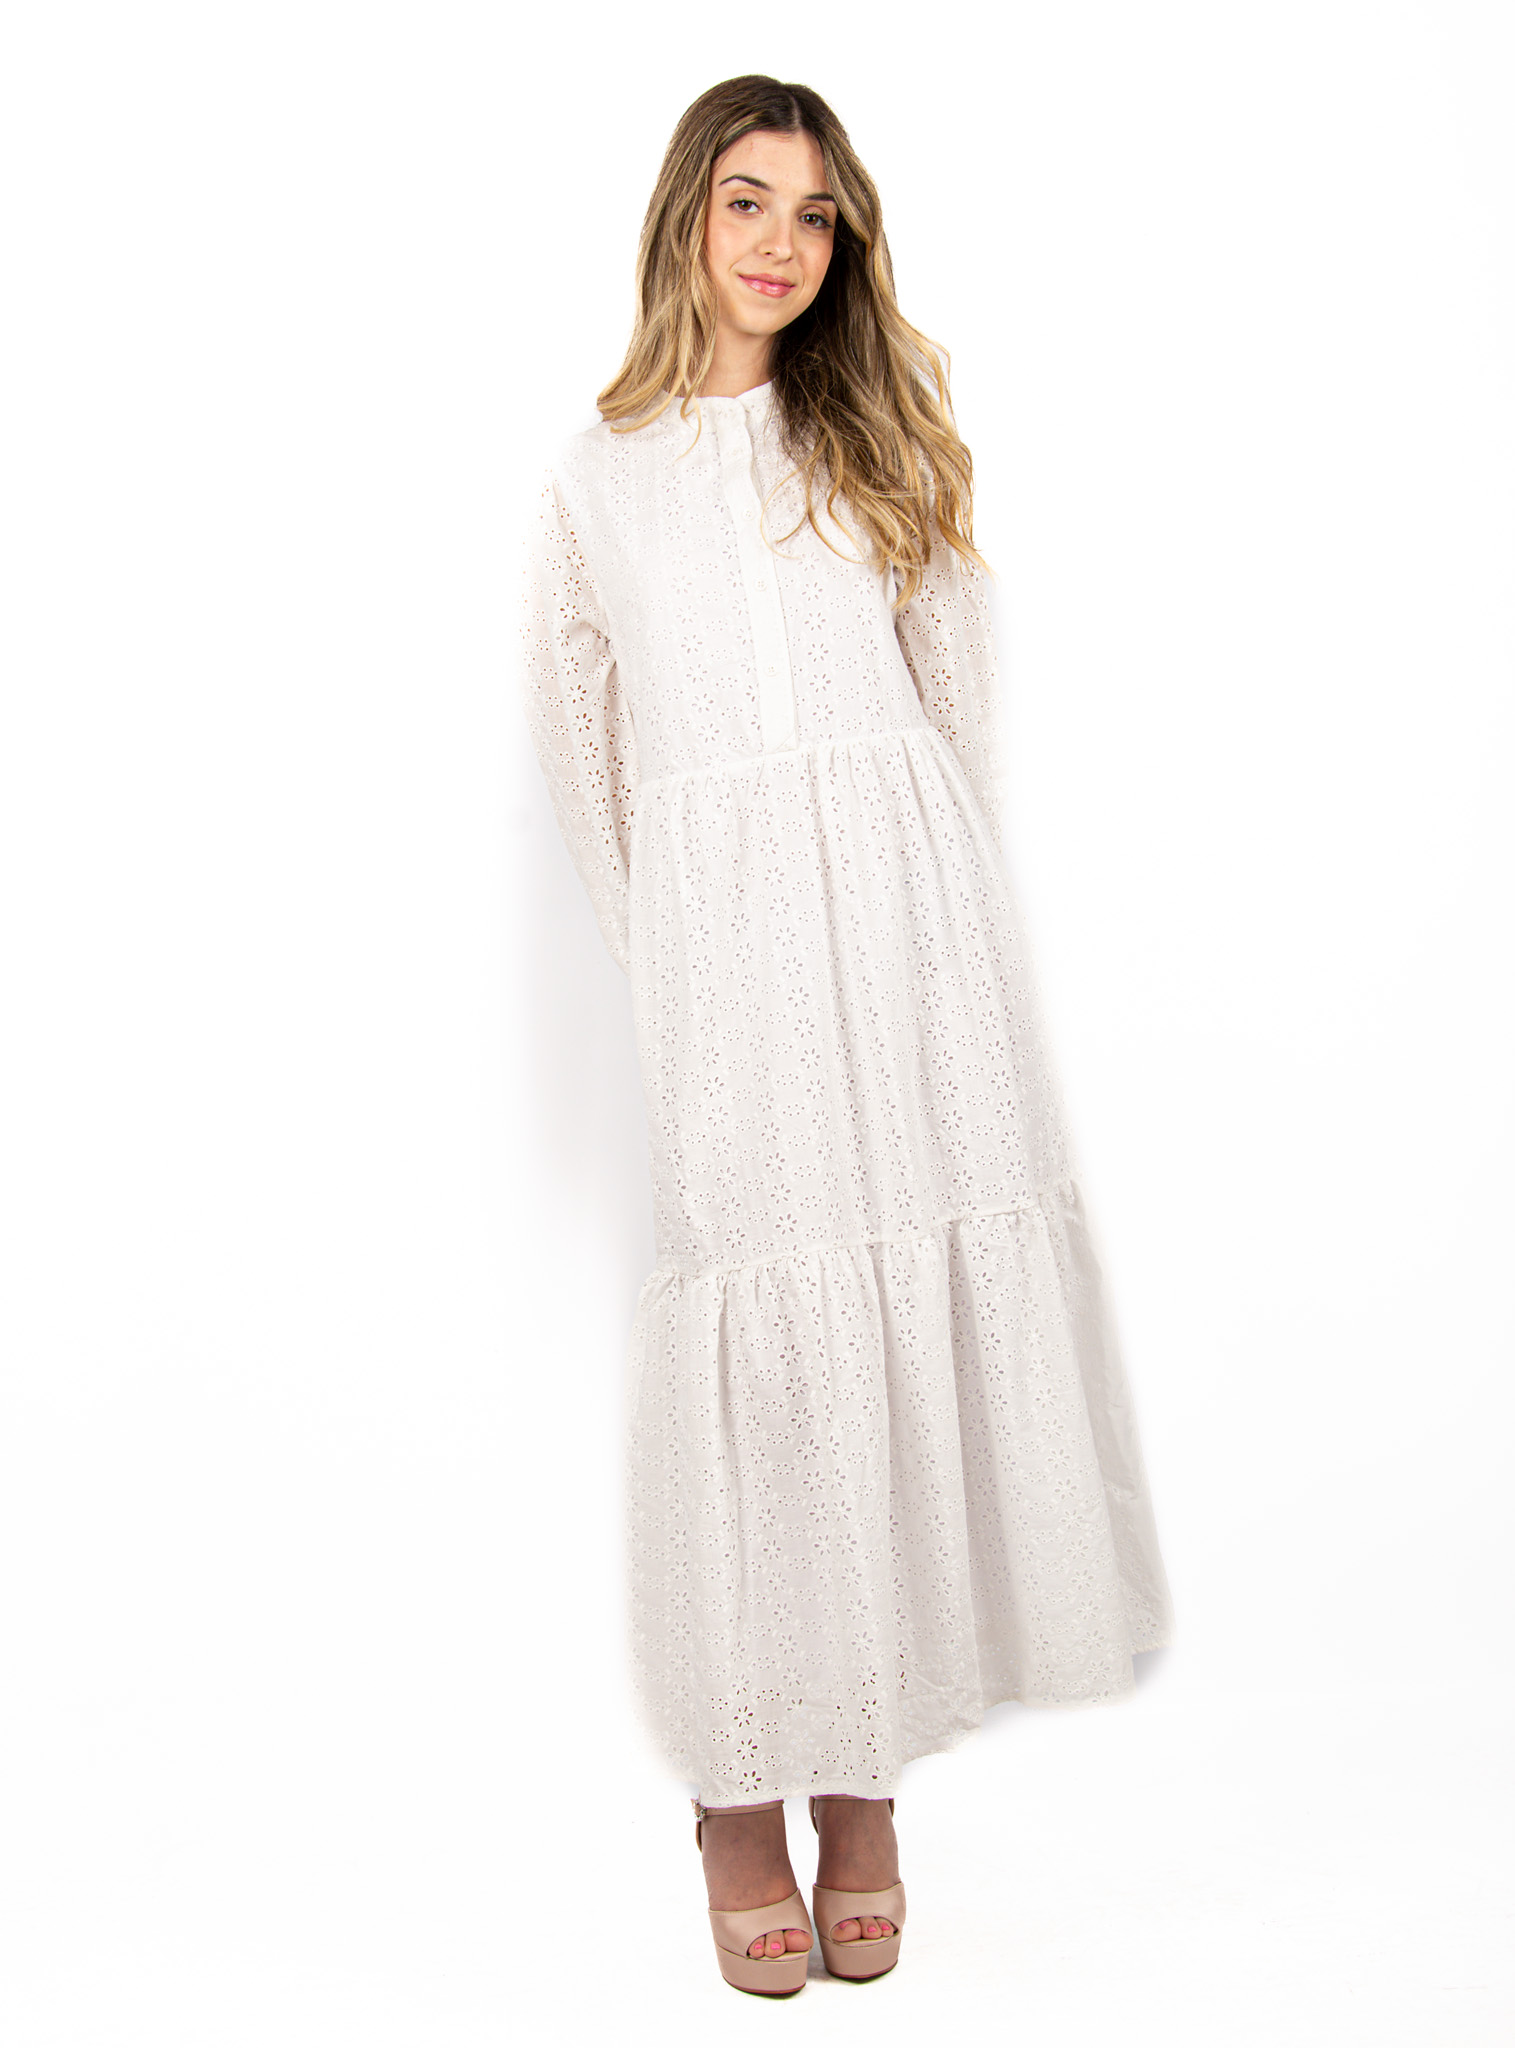 Φόρεμα Κυπούρ Δαντέλα Λευκό – EllenBoutique